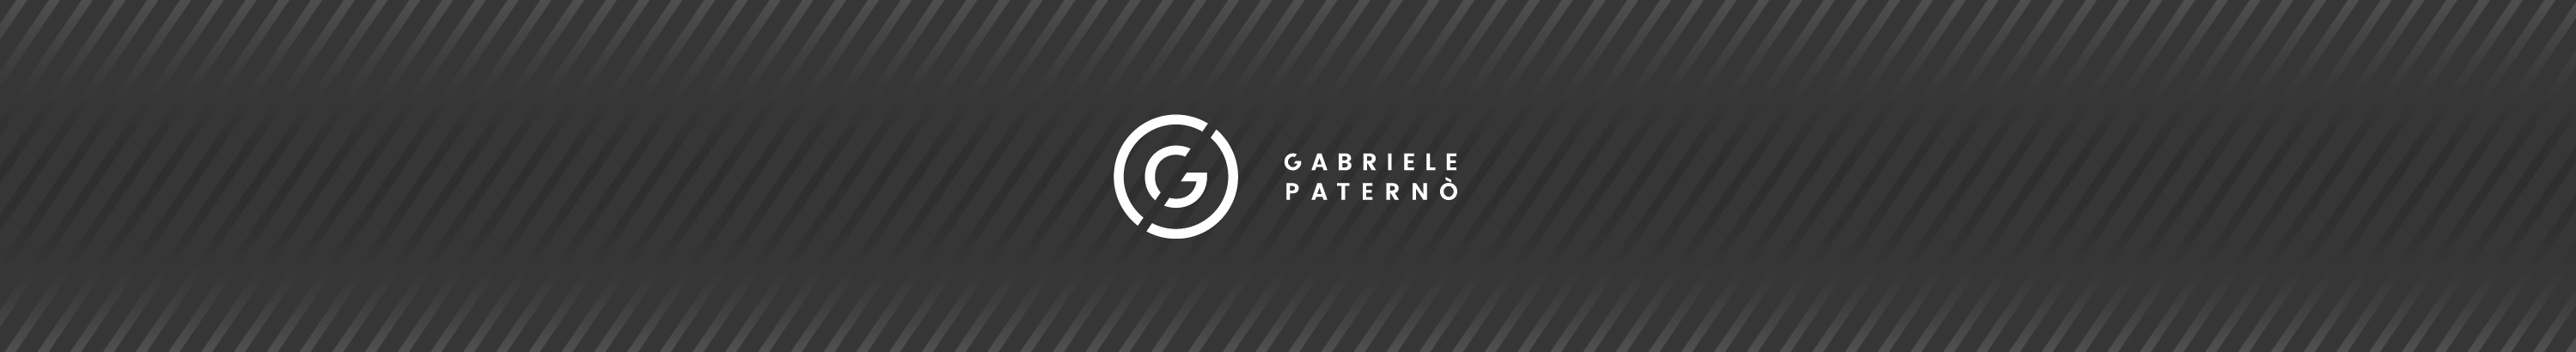 Gabriele Paternò's profile banner